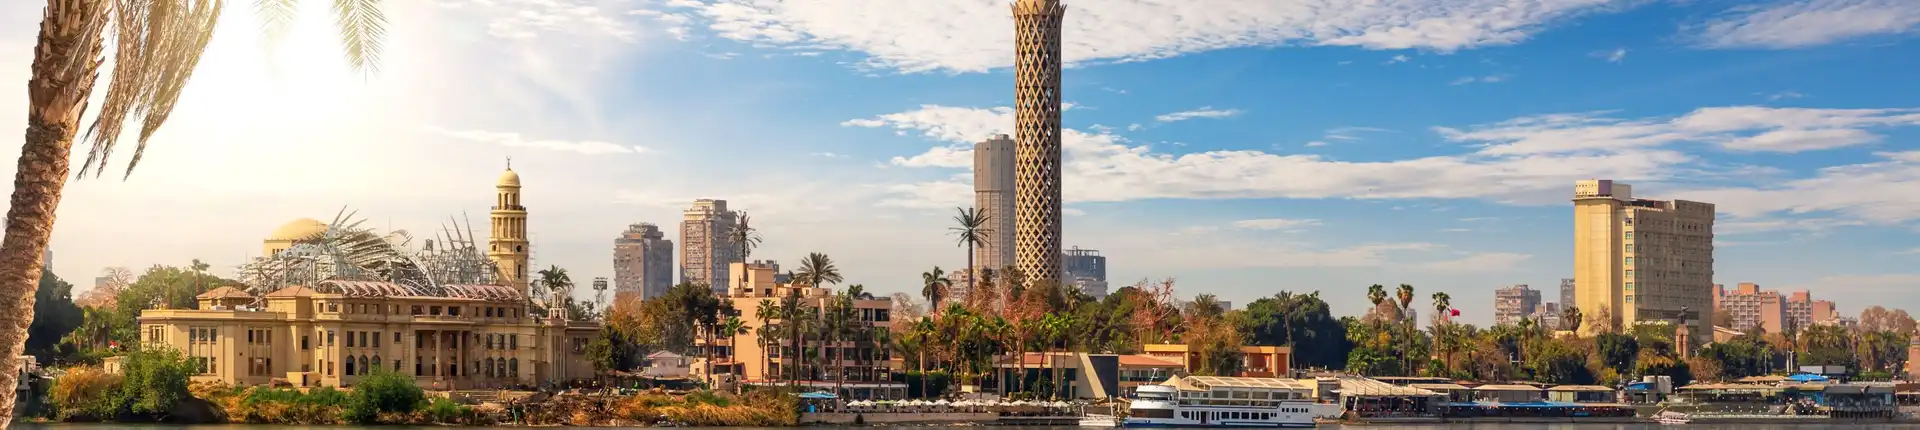 افضل 25 مكان سياحي في القاهرة